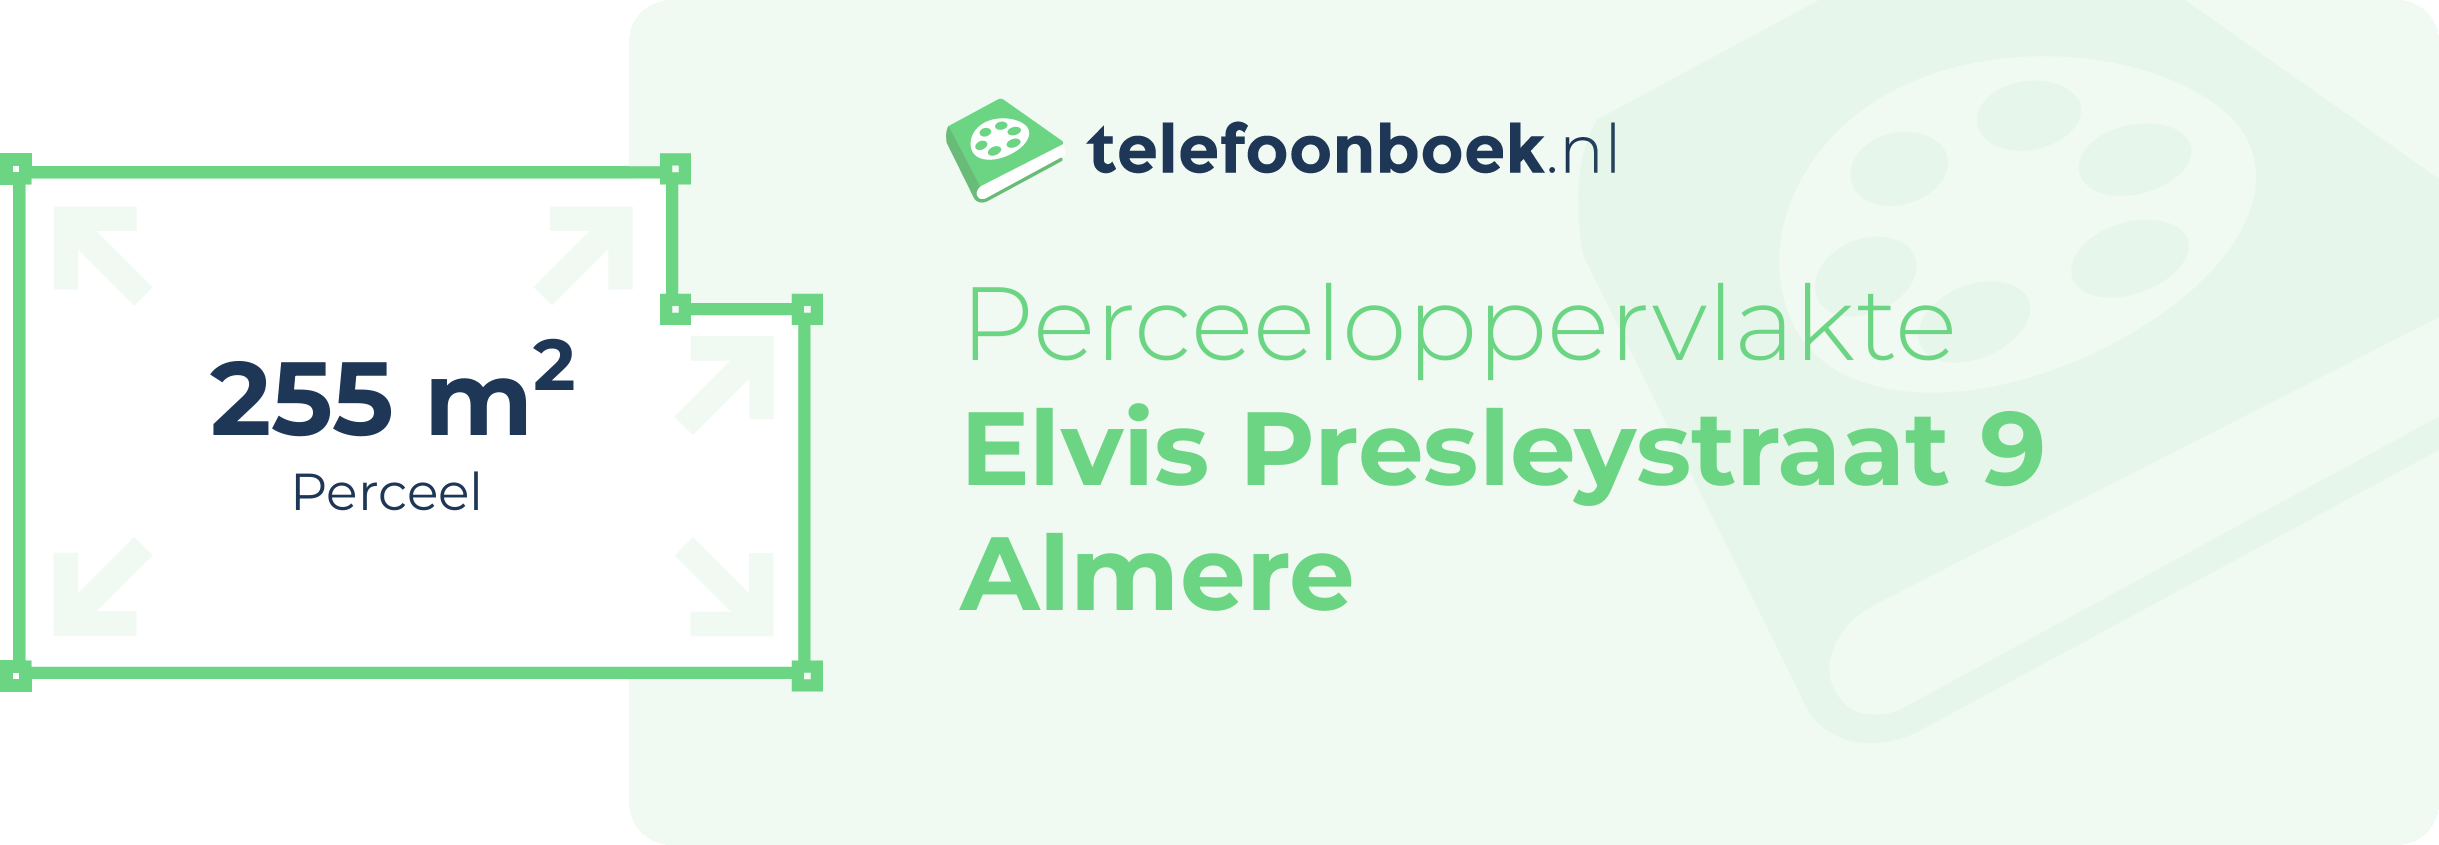 Perceeloppervlakte Elvis Presleystraat 9 Almere